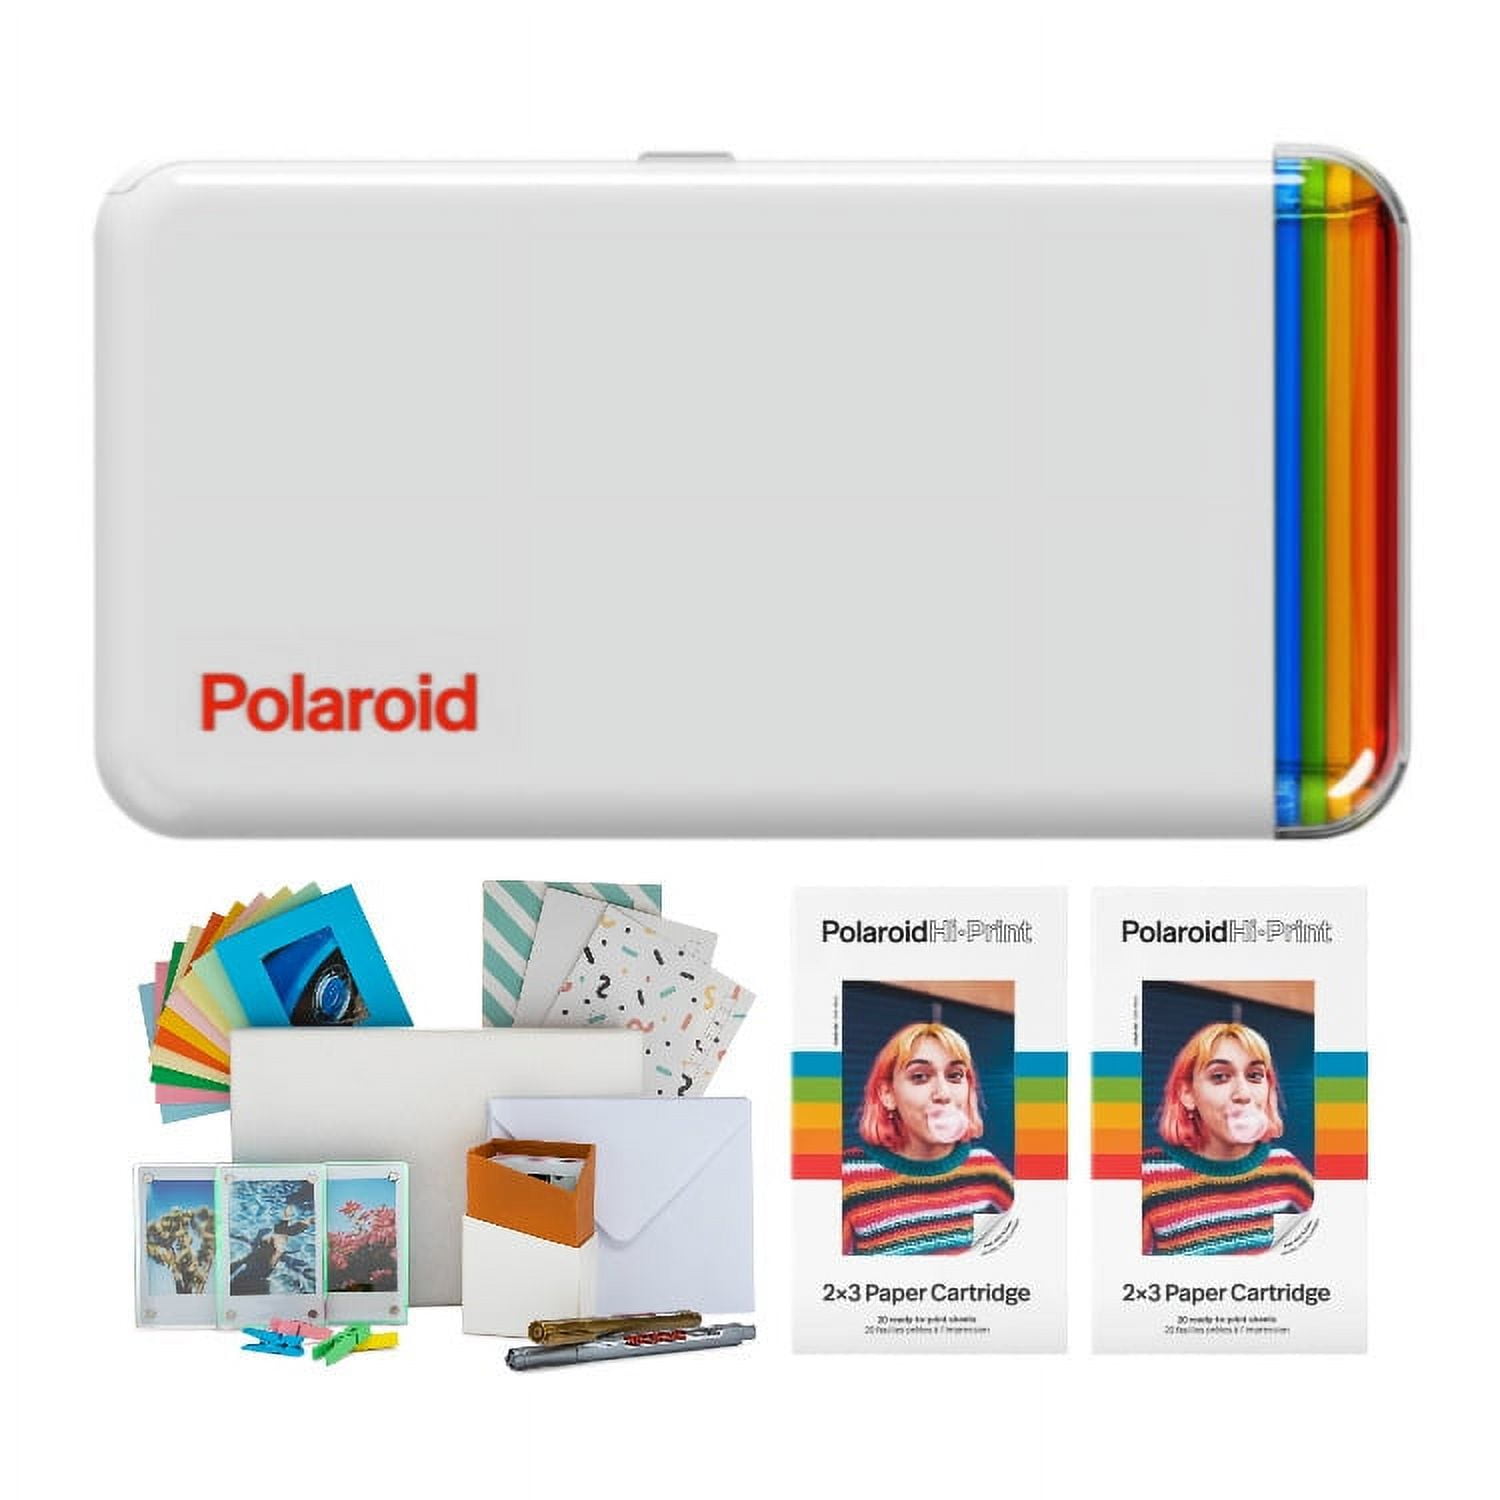 Photo4Less  Polaroid Hi-Print 2X3 Paper Cartridge 40 sheets +